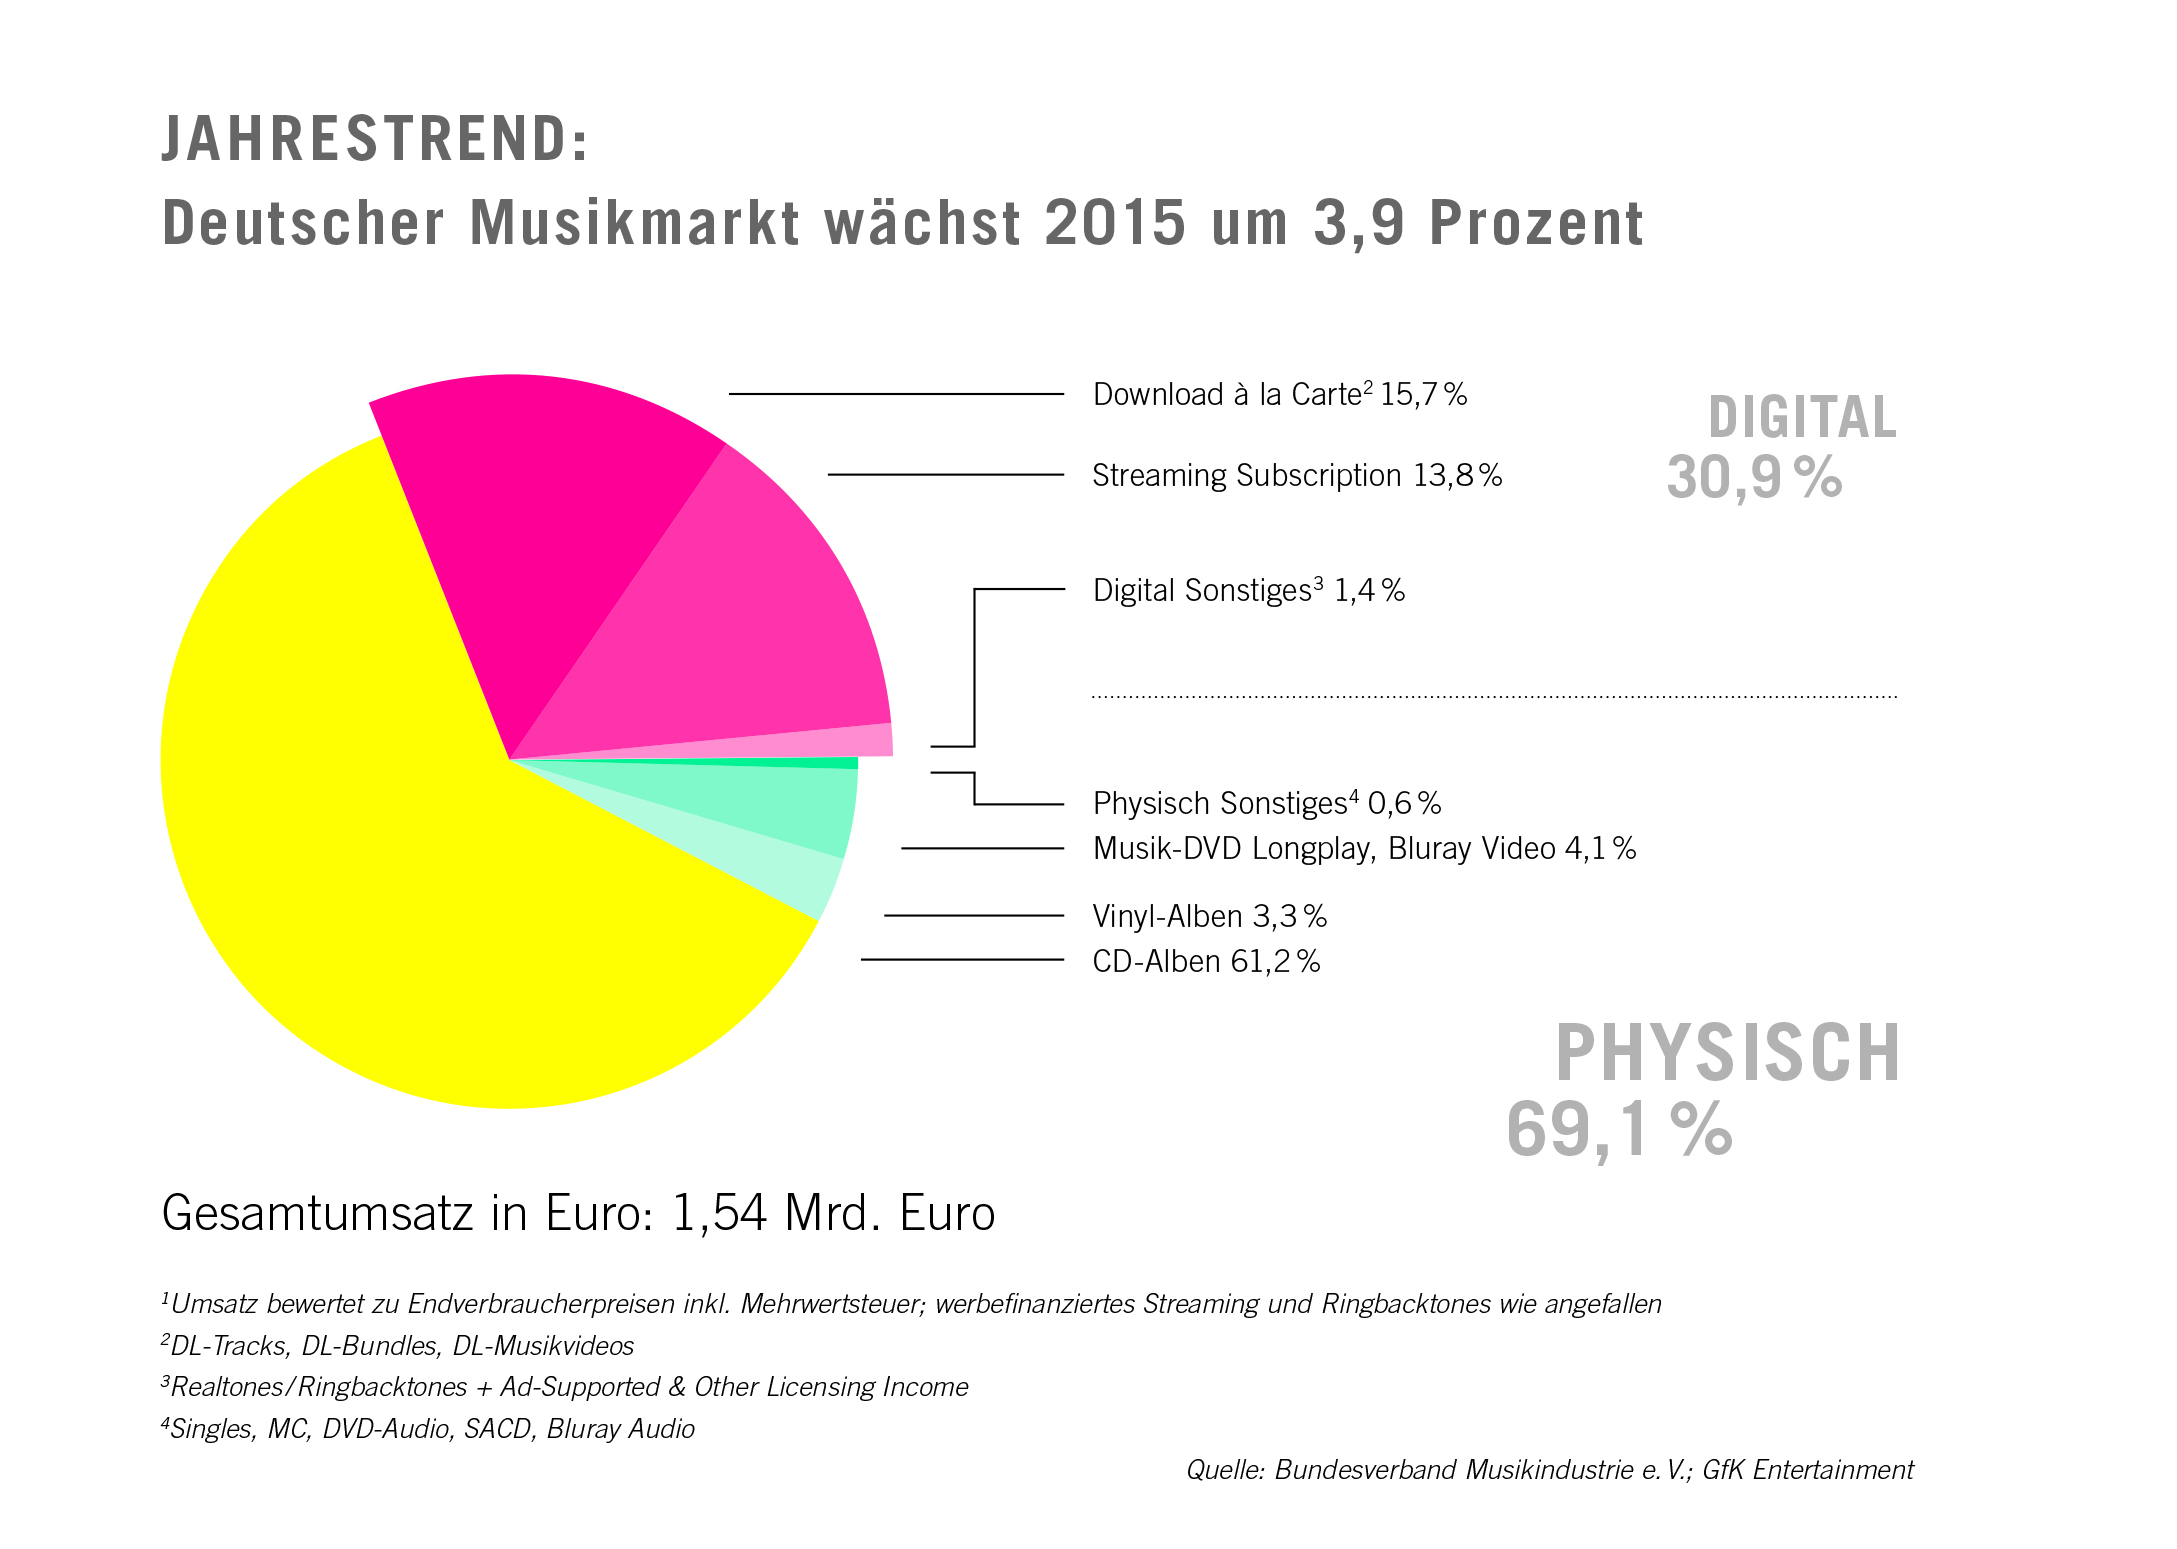 Deutscher Musikmarkt 2015 - Quelle: BVMI